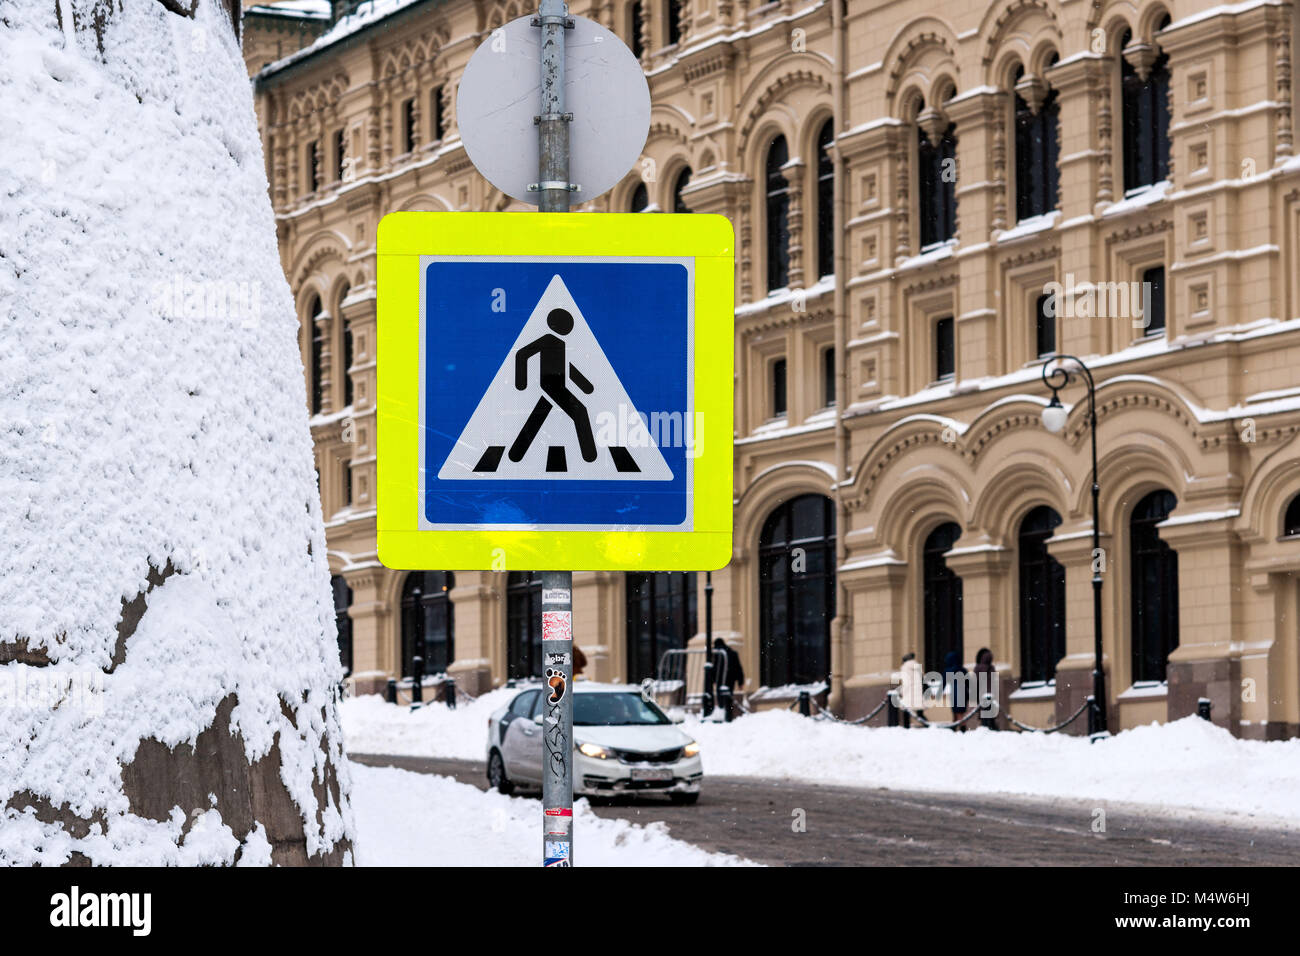 Moskau, 5. Februar 2018: Gelb und Blau lackiert Fußgängerüberweg Straße Warnschild auf einer verschneiten Straße in der Nähe vom Roten Platz entfernt. Stockfoto